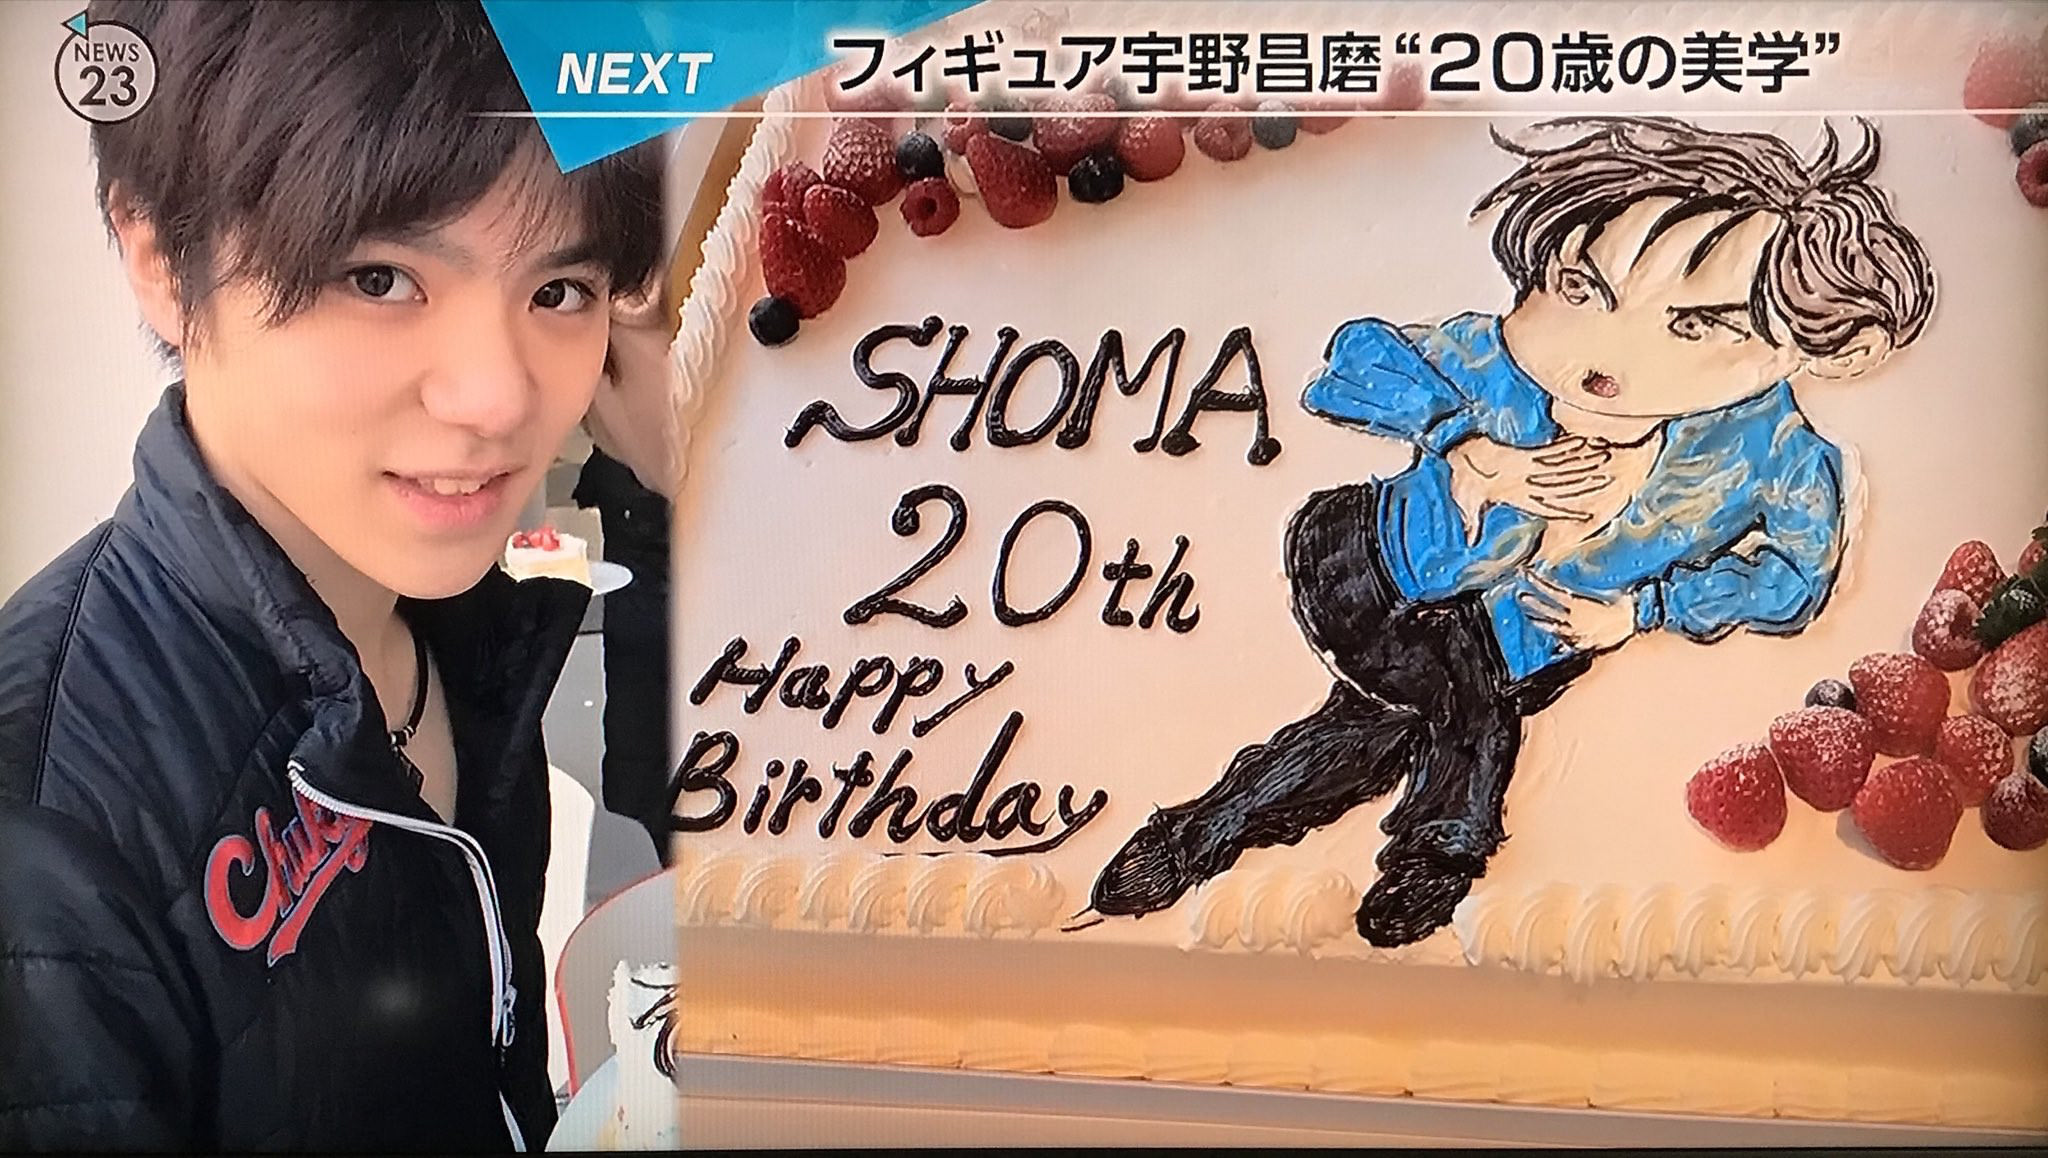 宇野昌磨選手20歳の誕生日に貰ったイラス入りのケーキが美味しそう